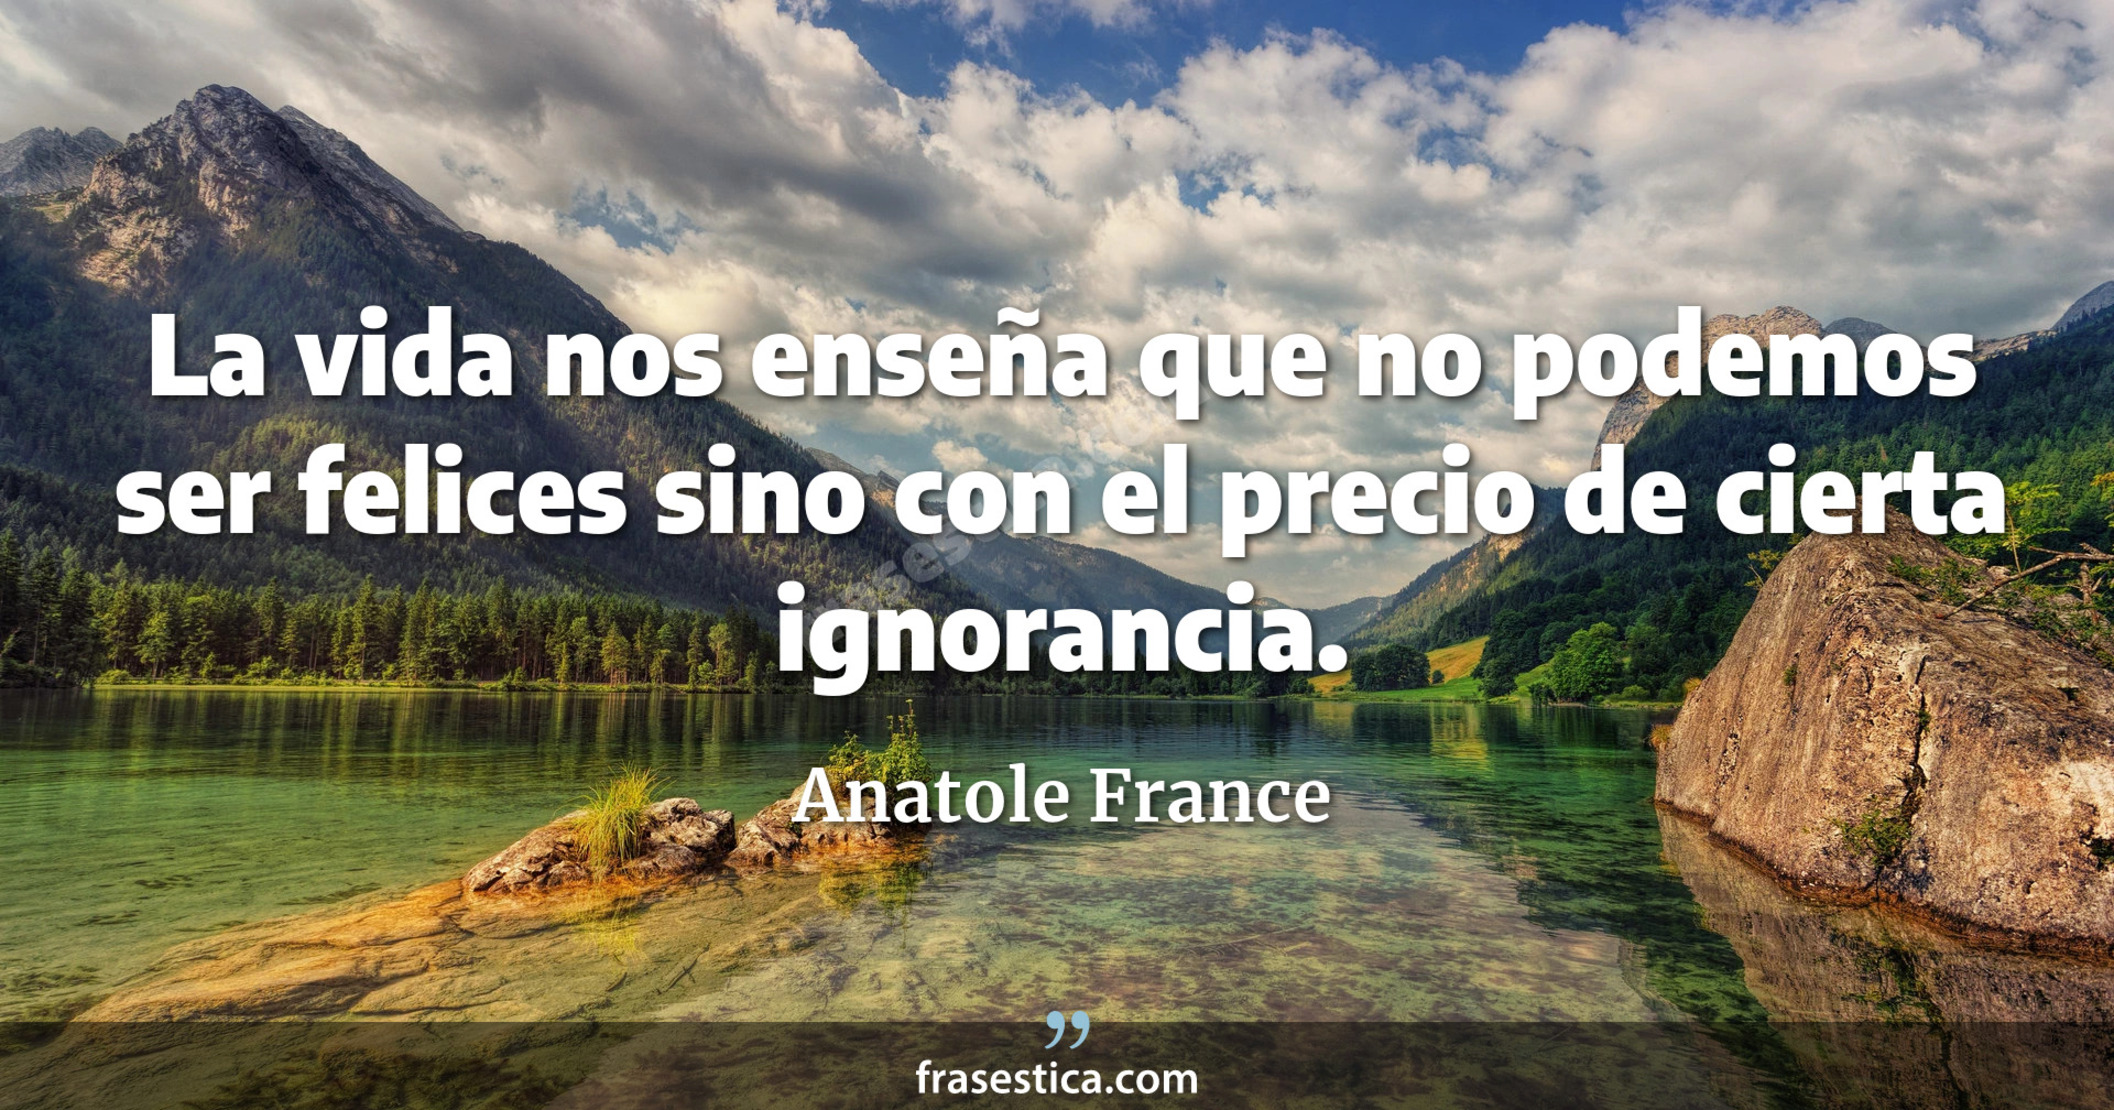 La vida nos enseña que no podemos ser felices sino con el precio de cierta ignorancia. - Anatole France